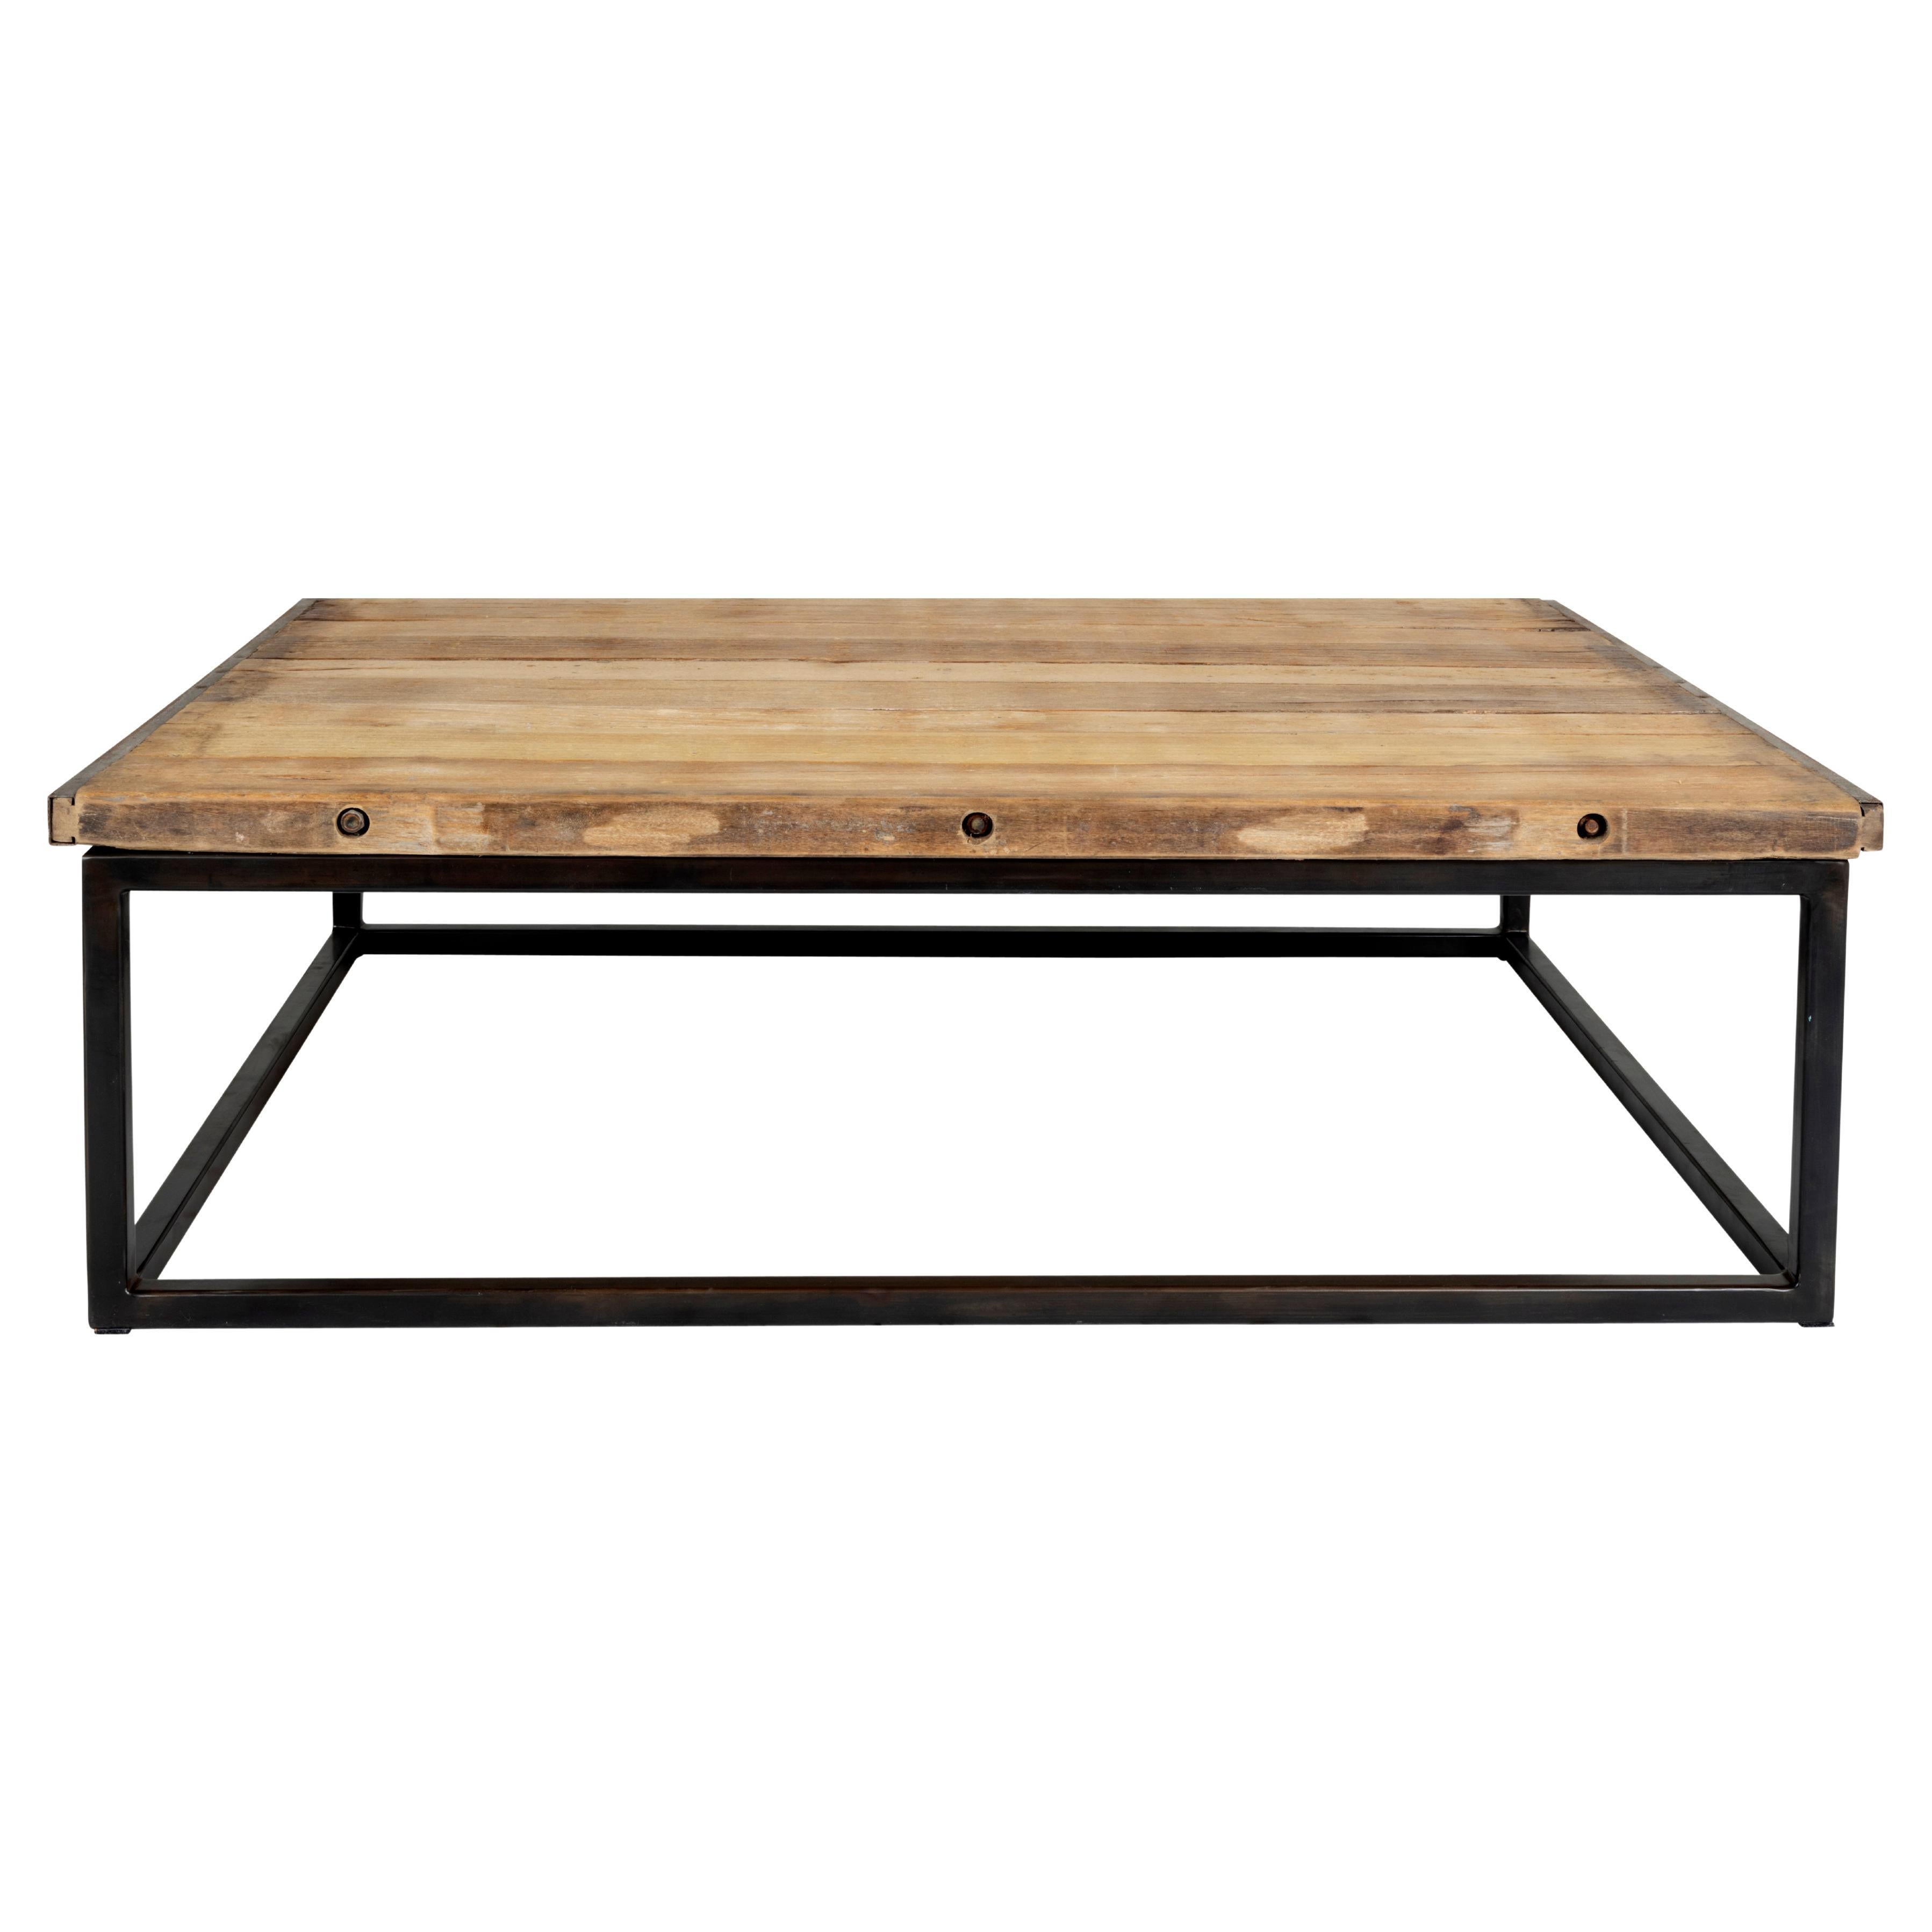 Hardwood Baking Pallet Top on Metal Base Coffee Table 